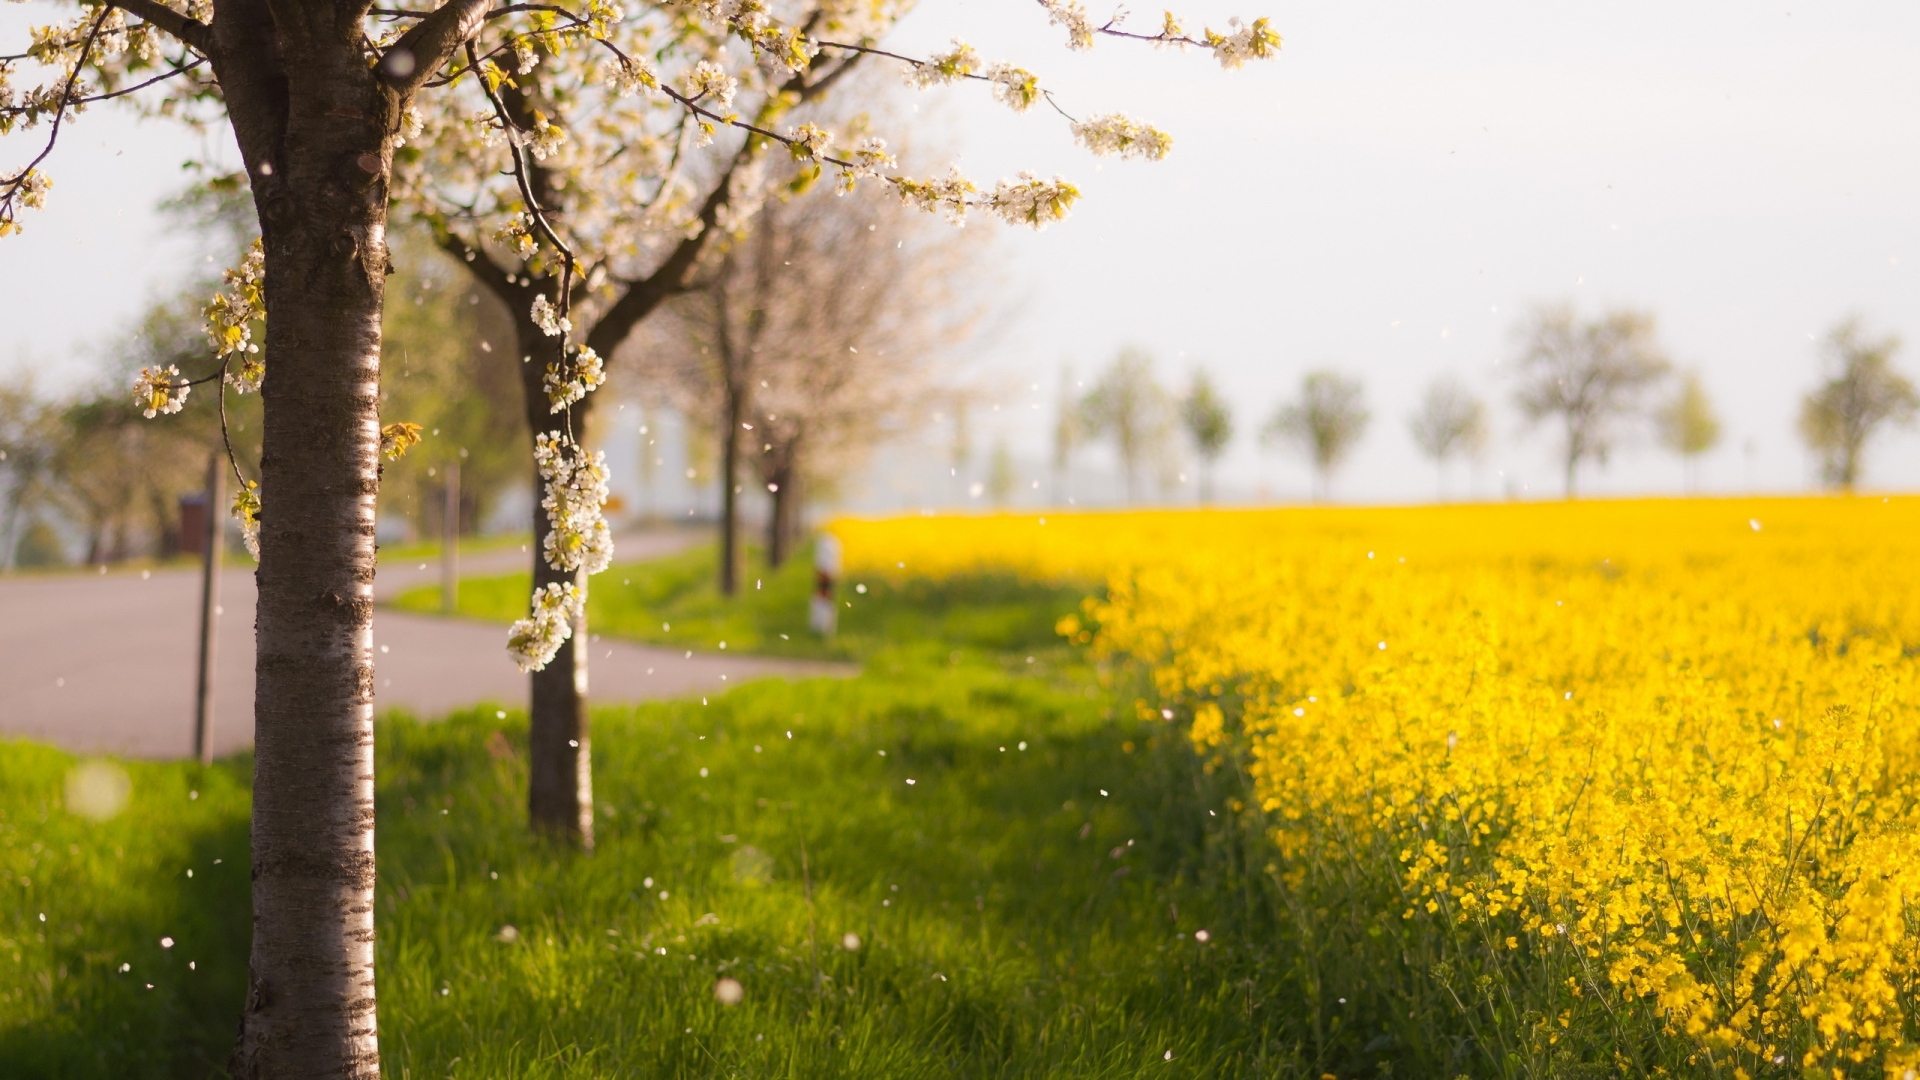 دانلود عکس فصل بهار با کیفیت بالا